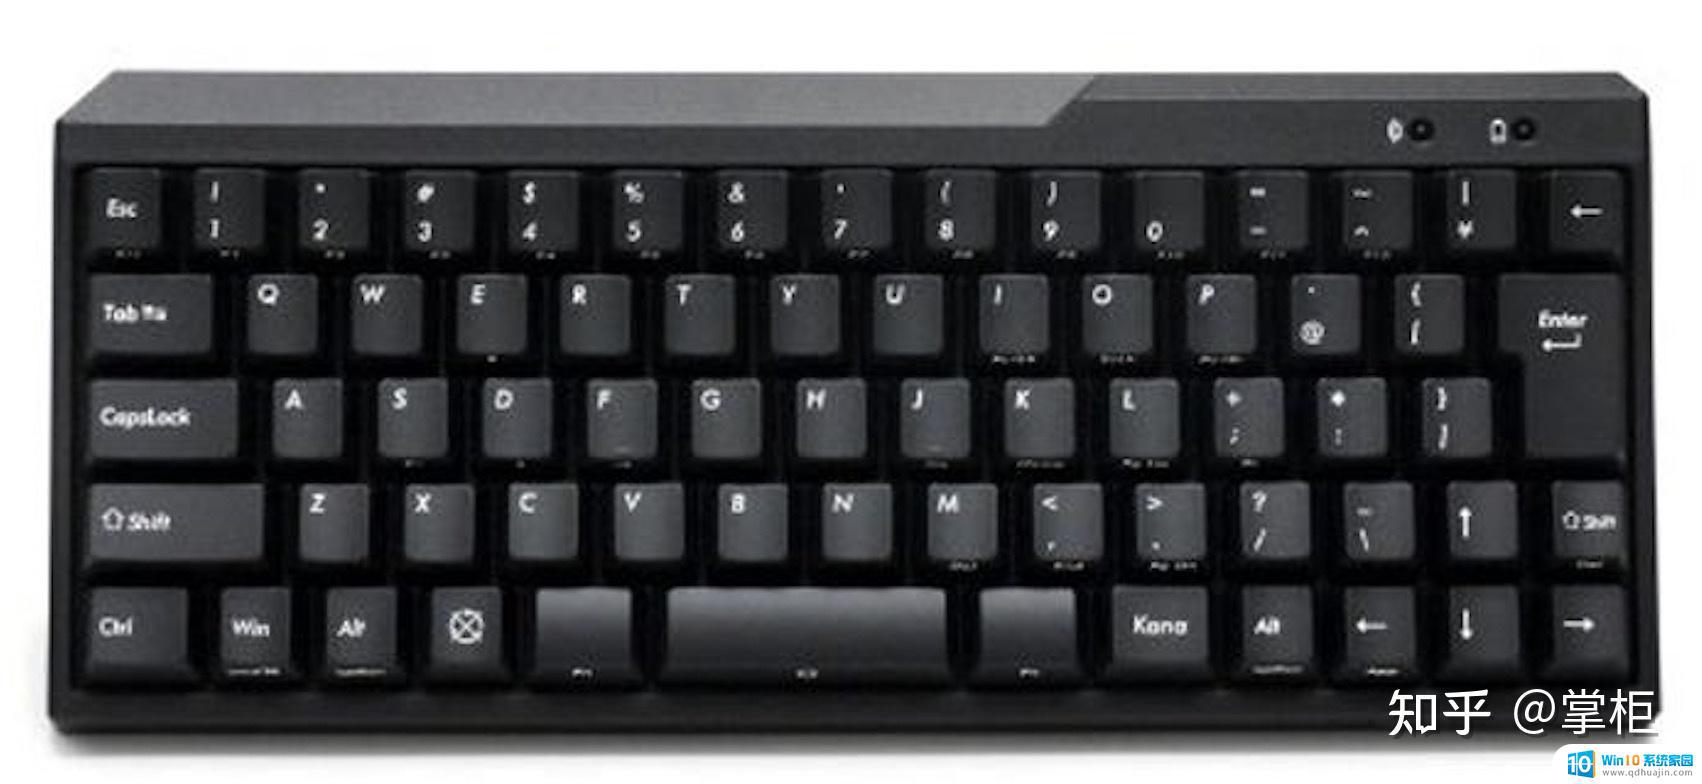 filco键盘有蓝牙吗 Filco机械键盘哪个系列最好用？